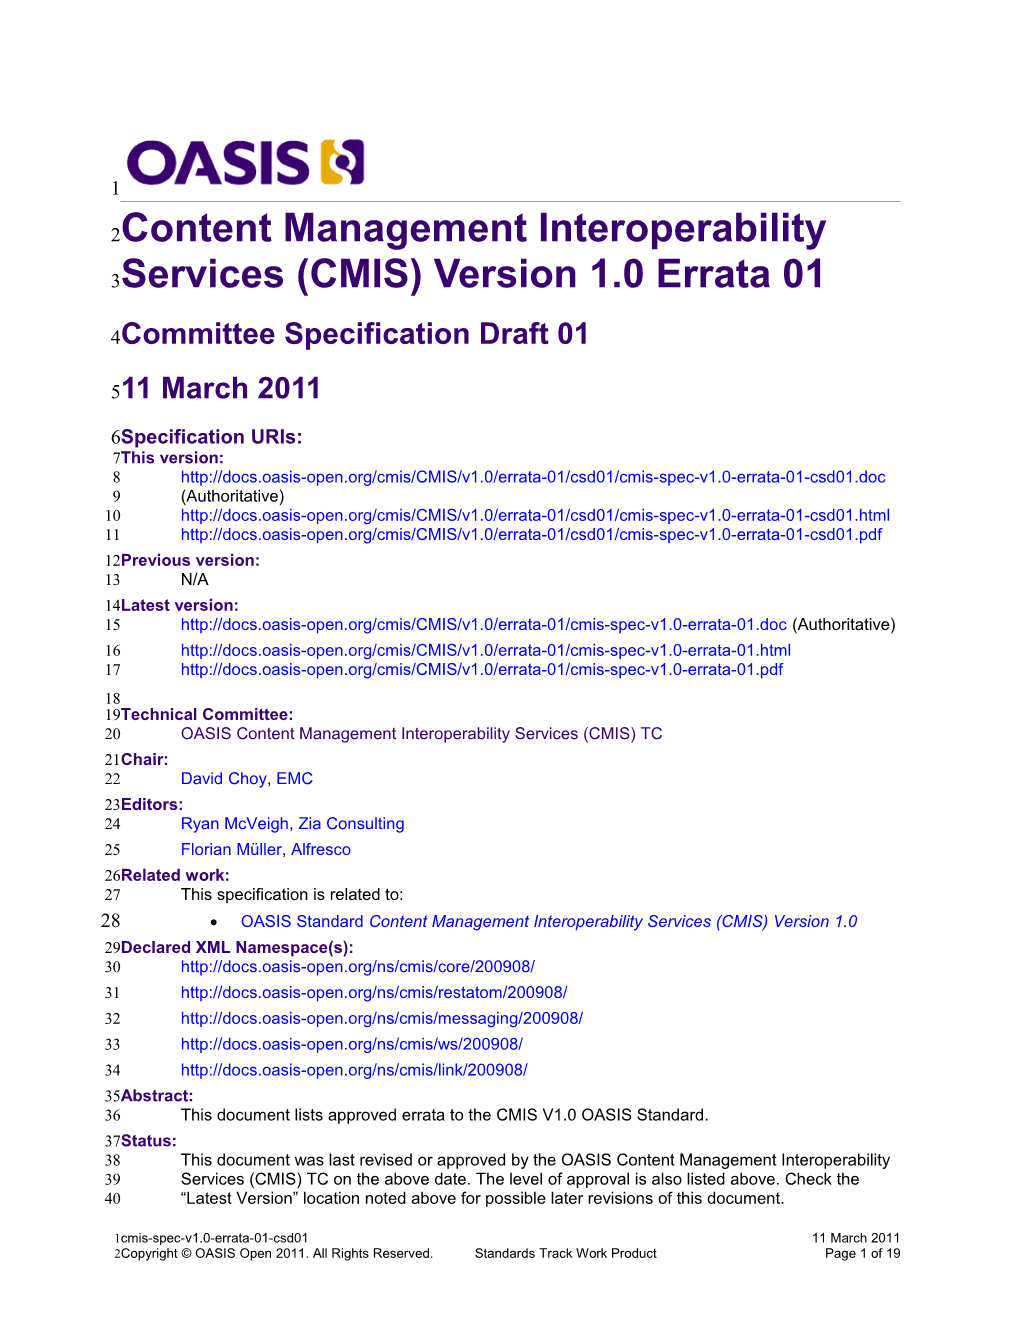 Content Management Interoperability Services (CMIS) Version 1.0 Errata 01